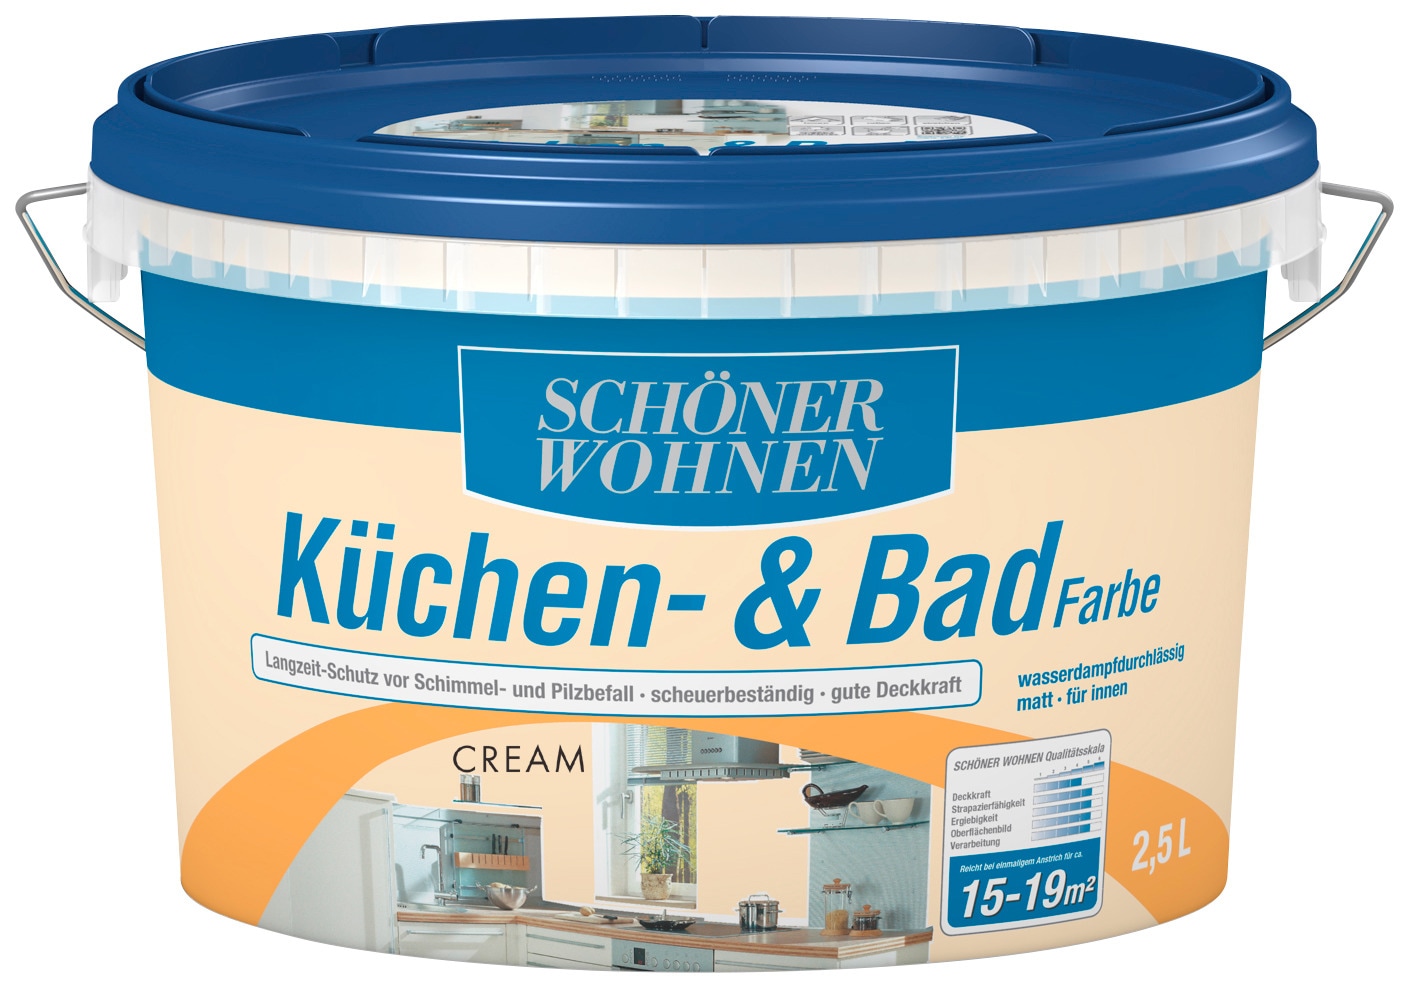 SCHÖNER WOHNEN FARBE Wandfarbe »Küchen- & Badfarbe«, 2,5 Liter, cream, Langzeitschutz vor Schimmel- und Pilzbefall